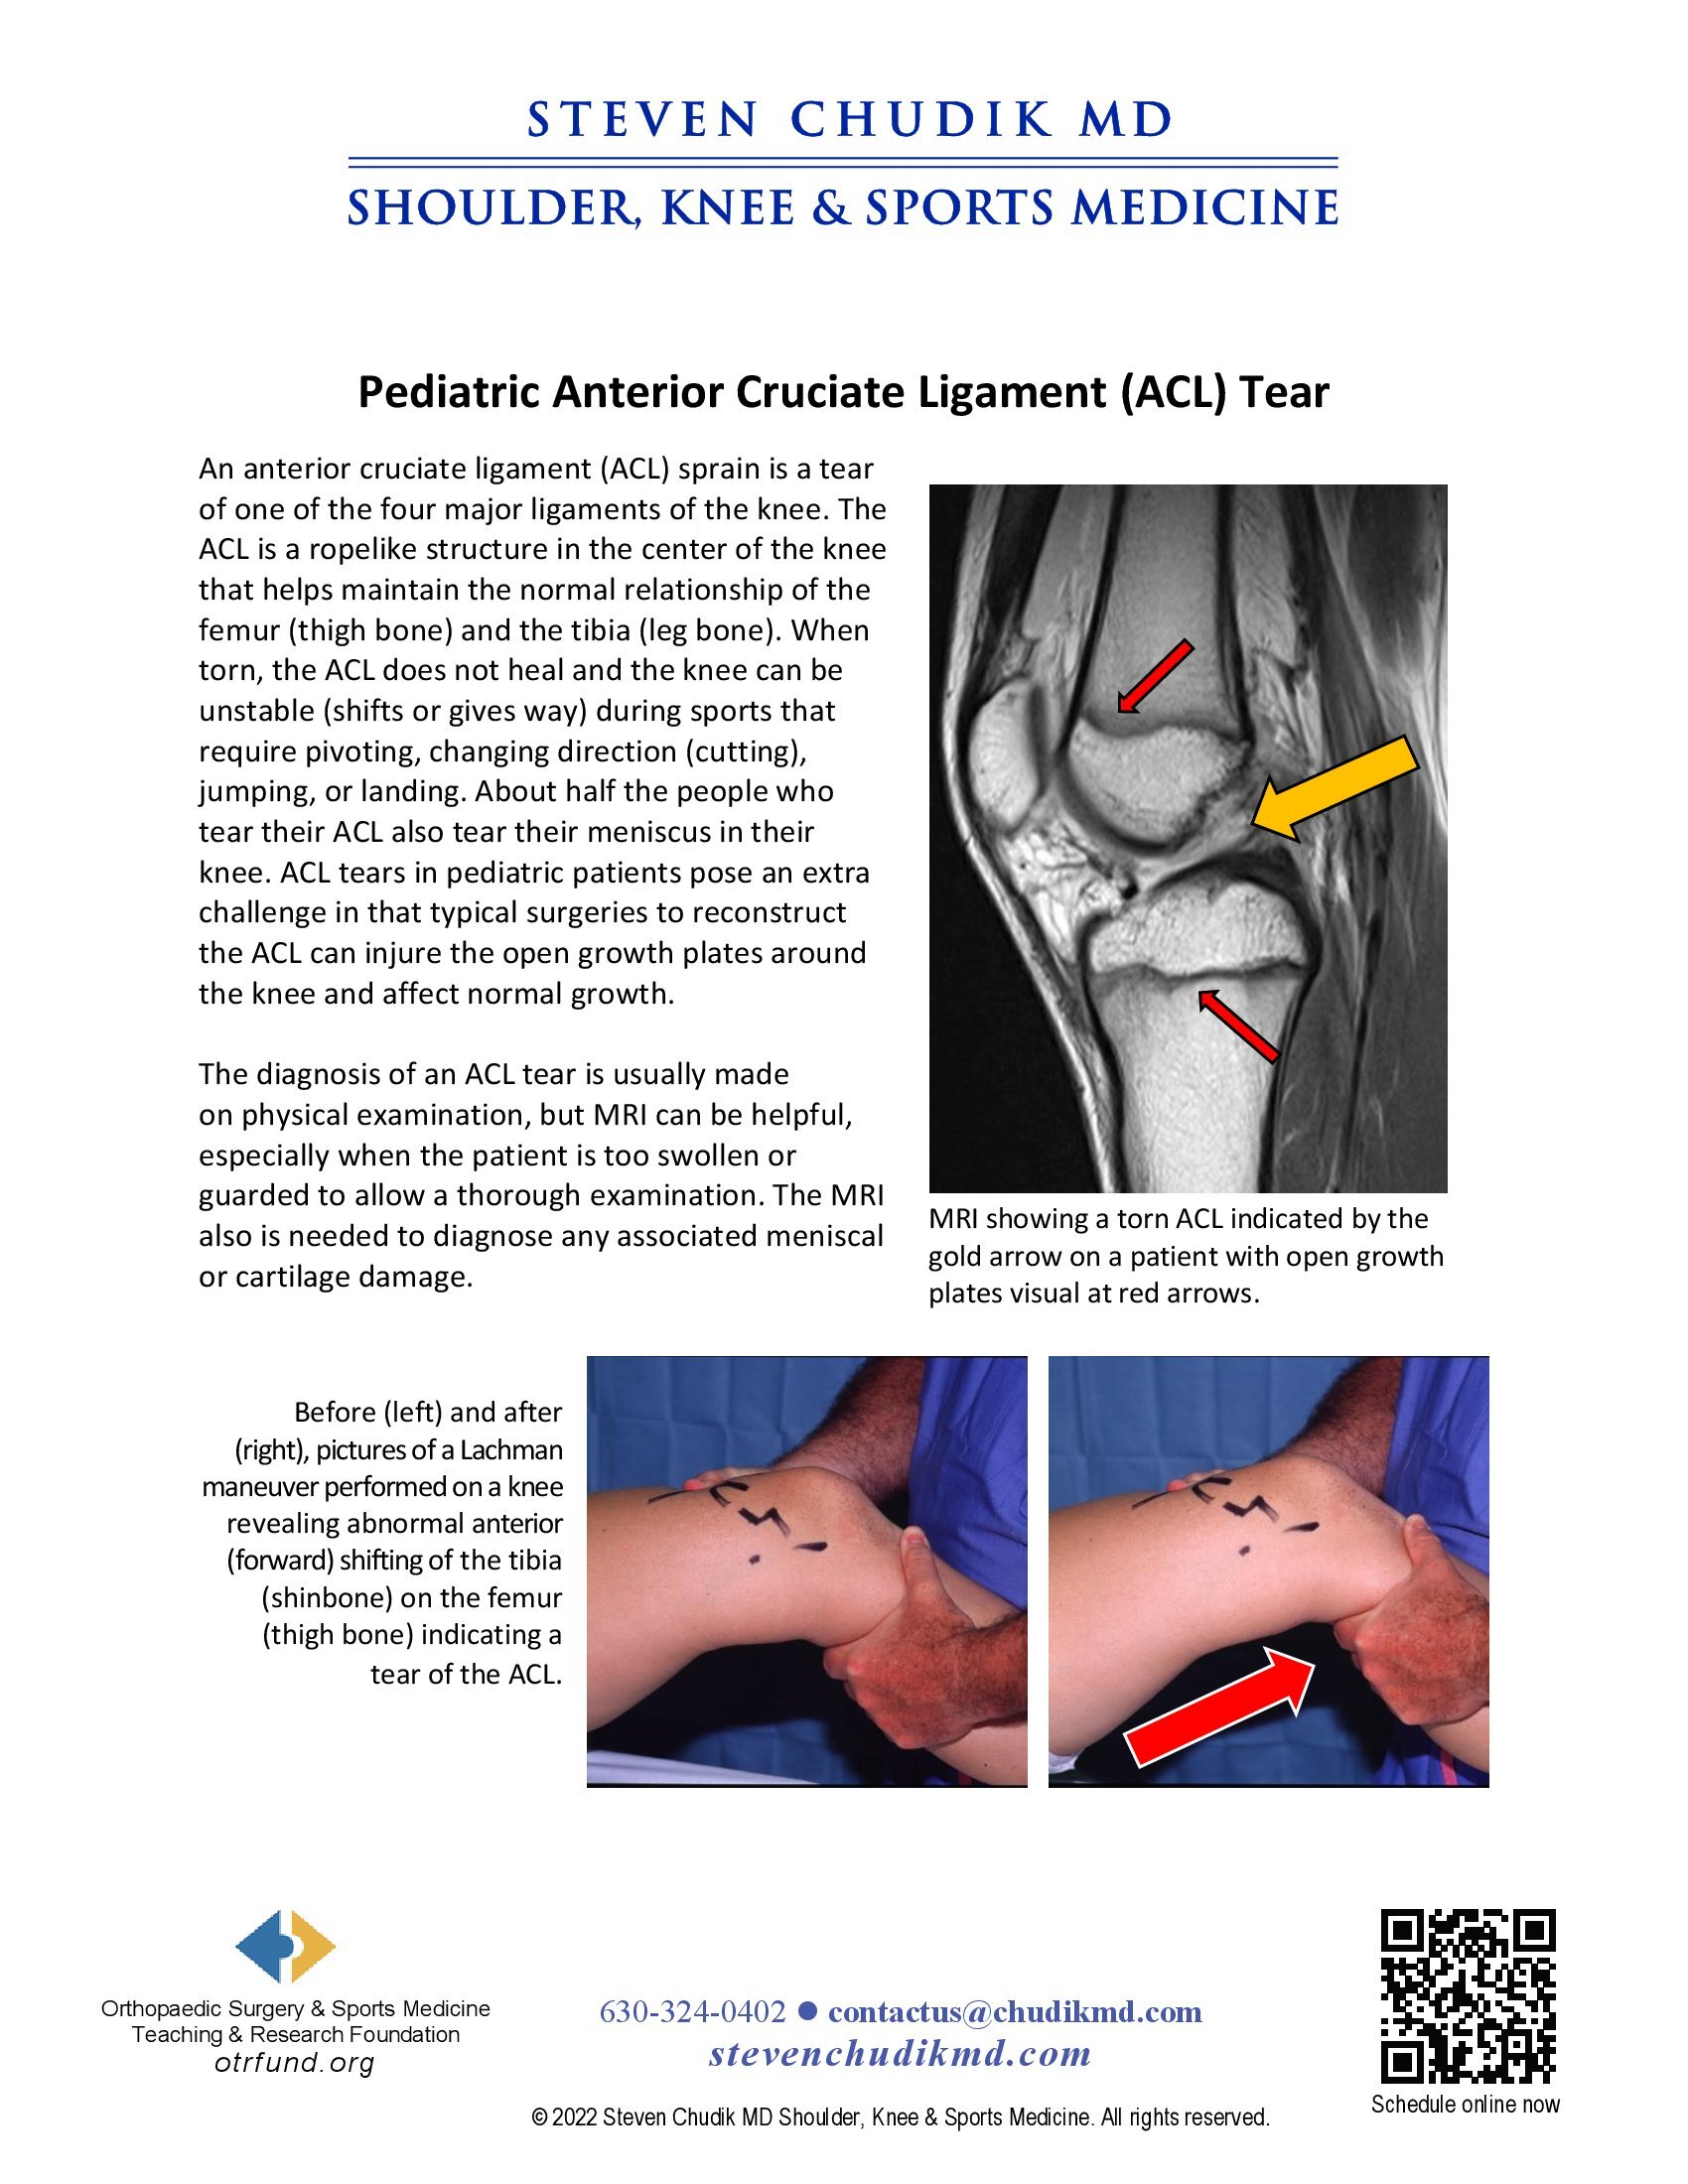 Pediatric Anterior Cruciate Ligament (ACL) Injuries - Steven Chudik MD